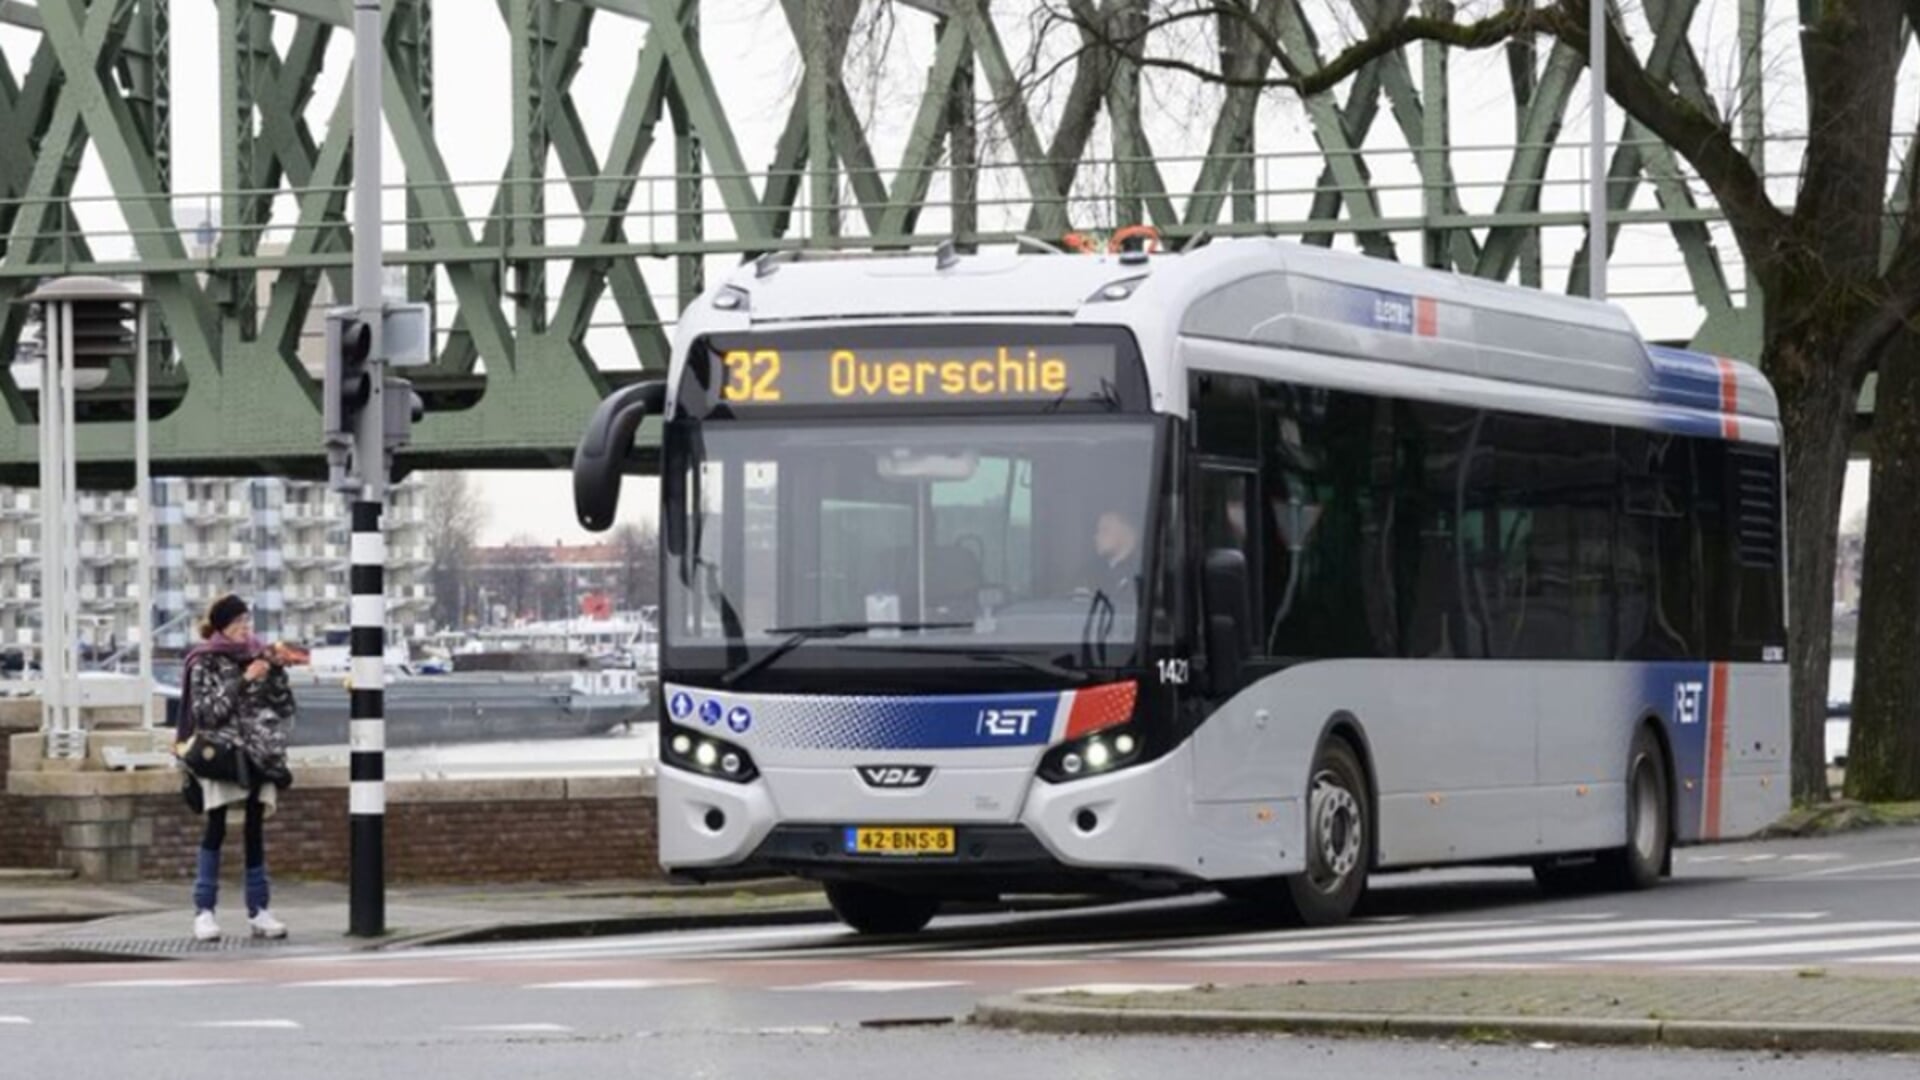 Afvoer Leegte Goed RET moet wéér afschalen, vanaf maandag rijden er minder bussen - Adverteren  Rotterdam | De Havenloods | Krant en Online